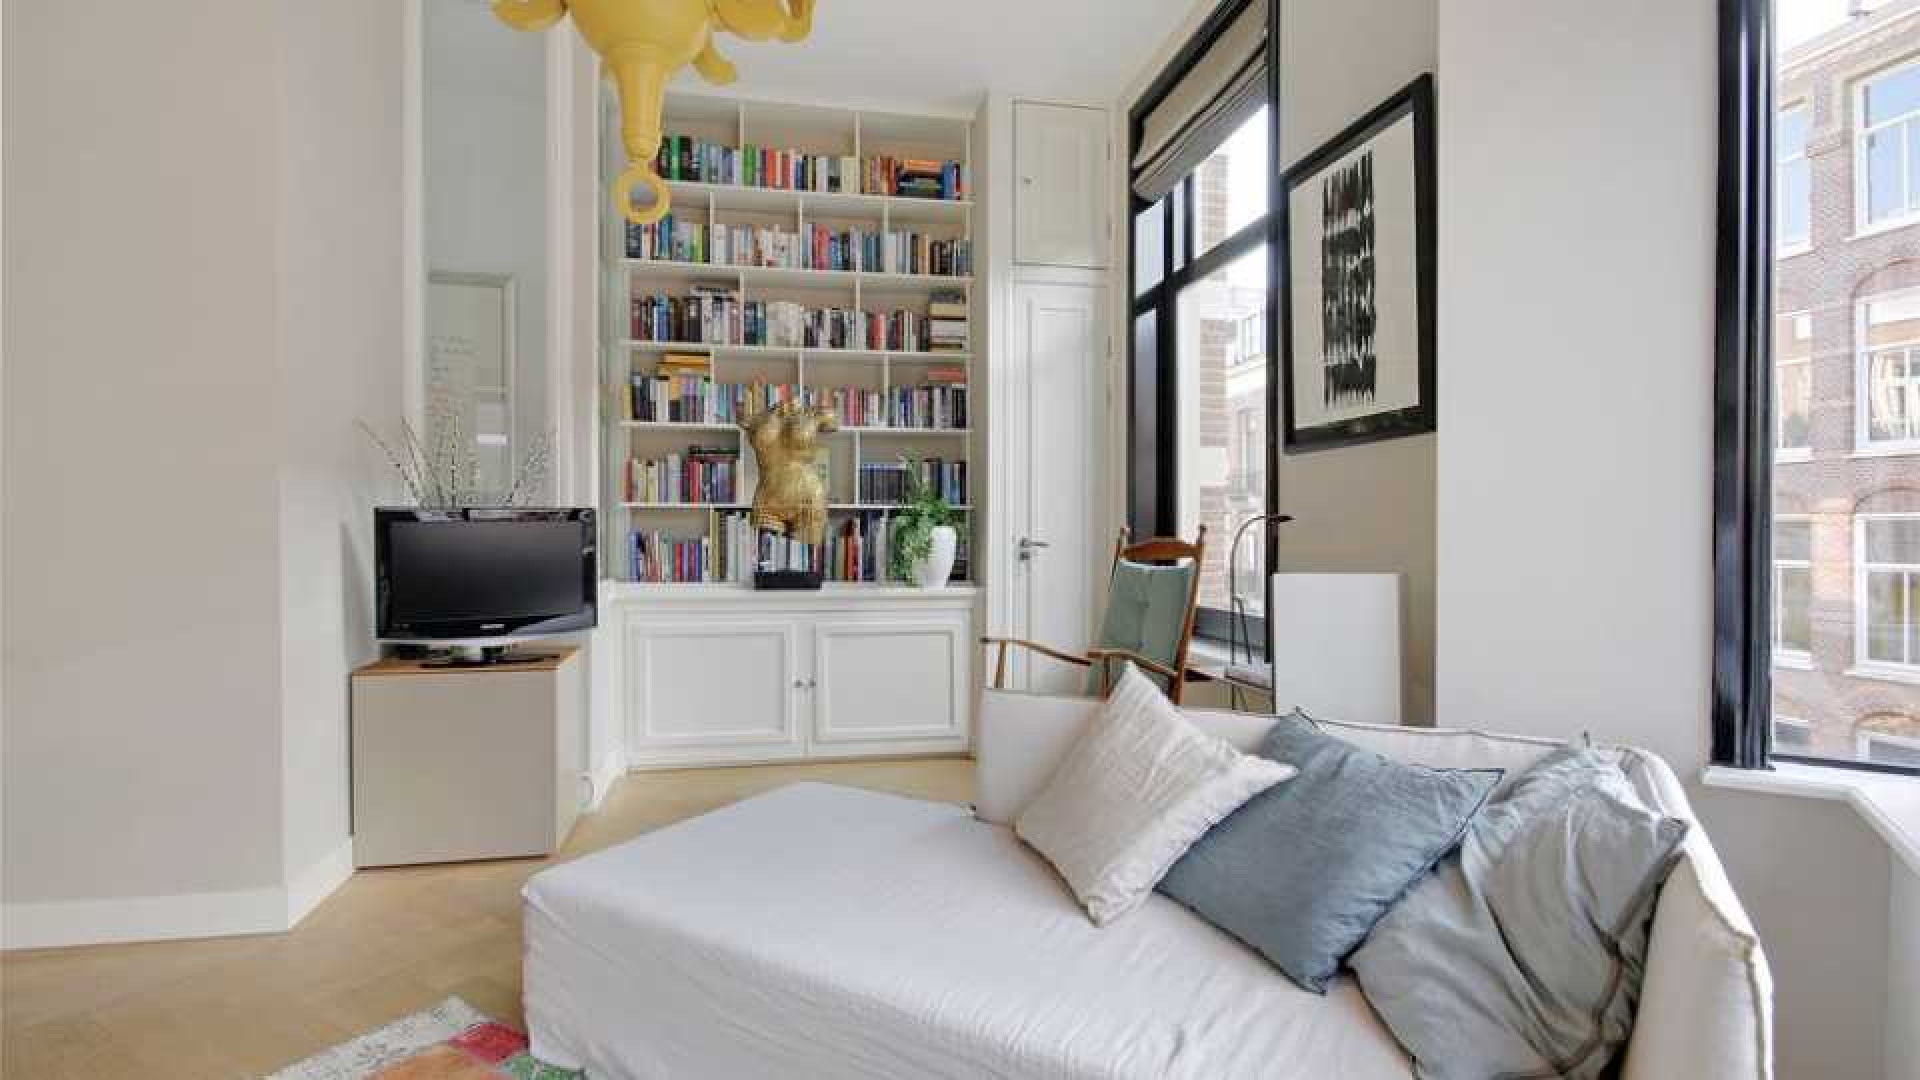 Leco van Zadelhoff koopt voor miljoen euro luxe appartement. Zie foto's 3